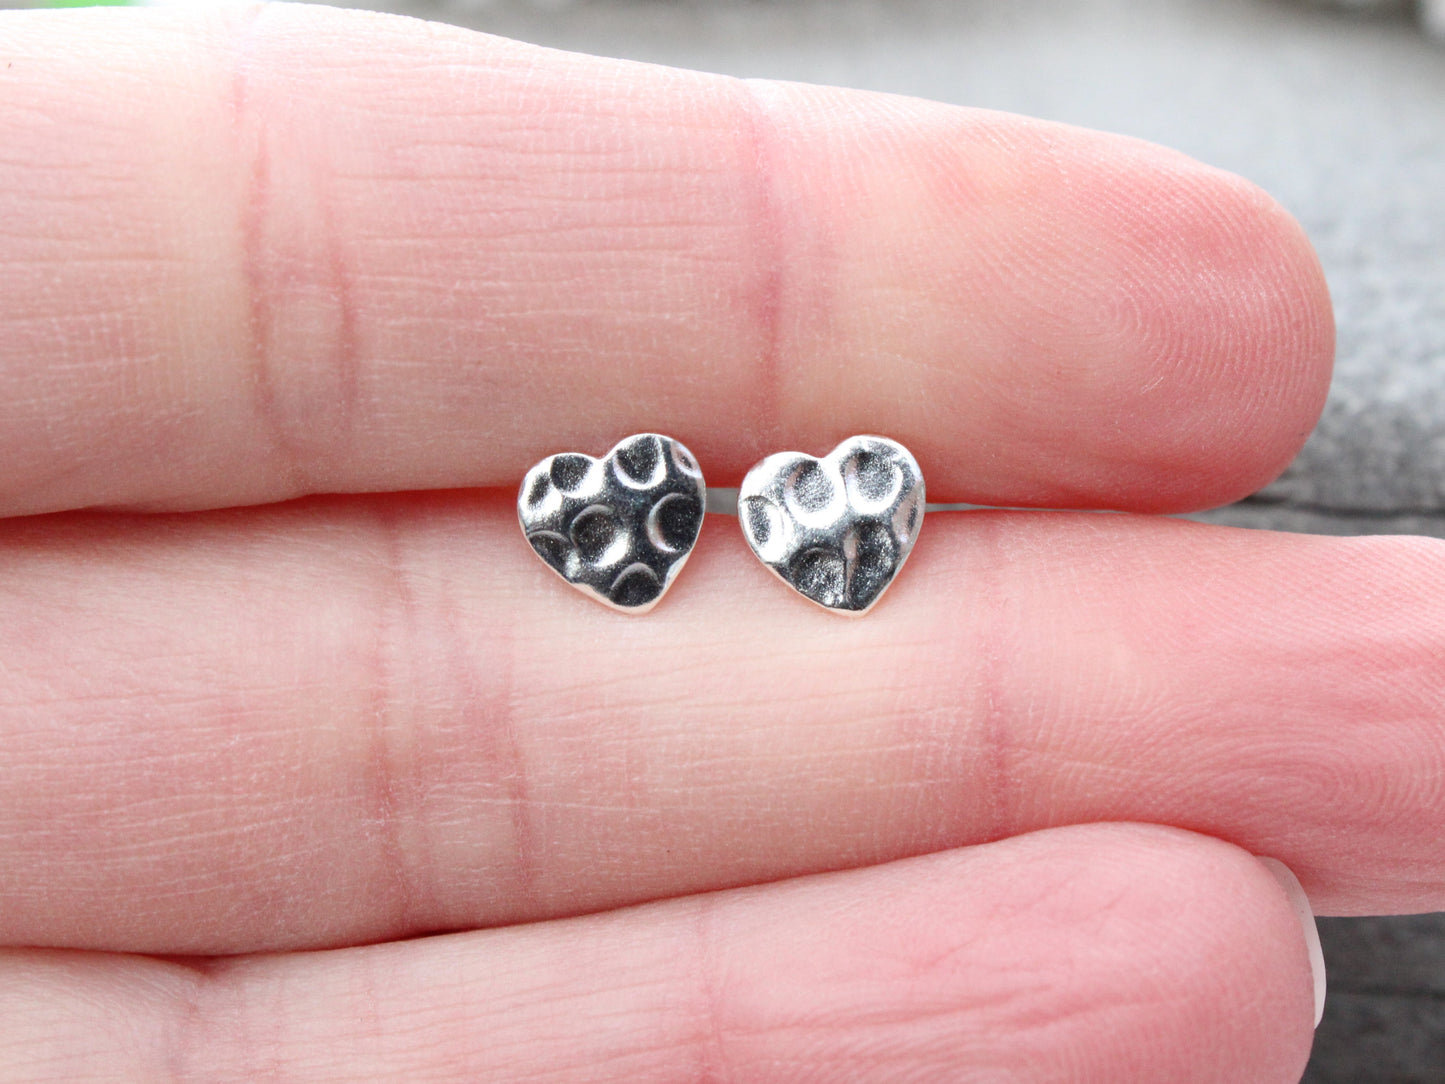 Heart stud earrings.